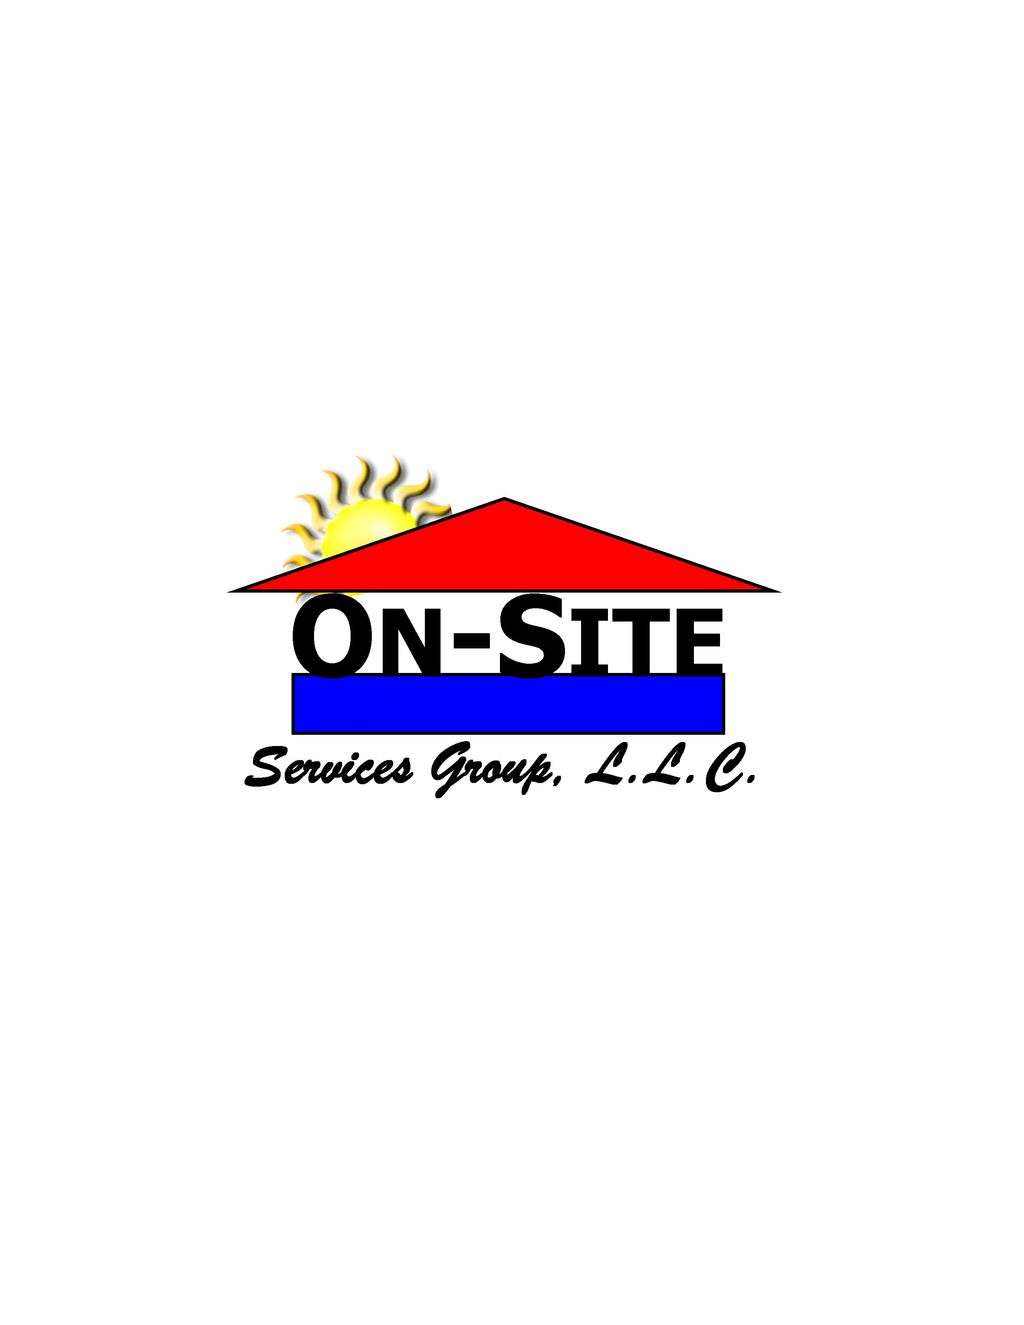 On-Site Services Group, L.L.C.